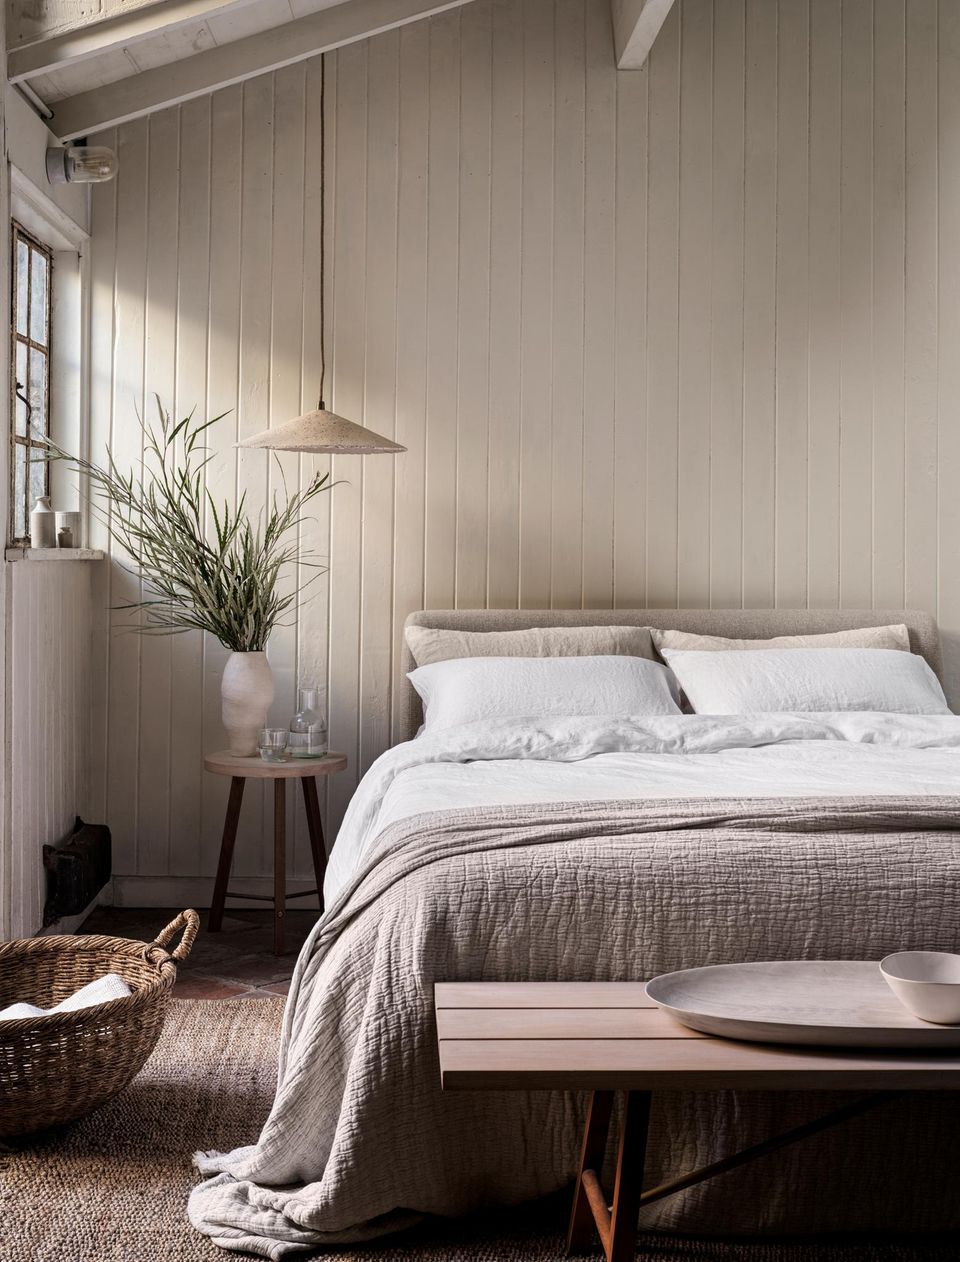 Bett mit Leinenbettwäsche, dahinter Wand aus Holz, Pflanze und Beistelltisch